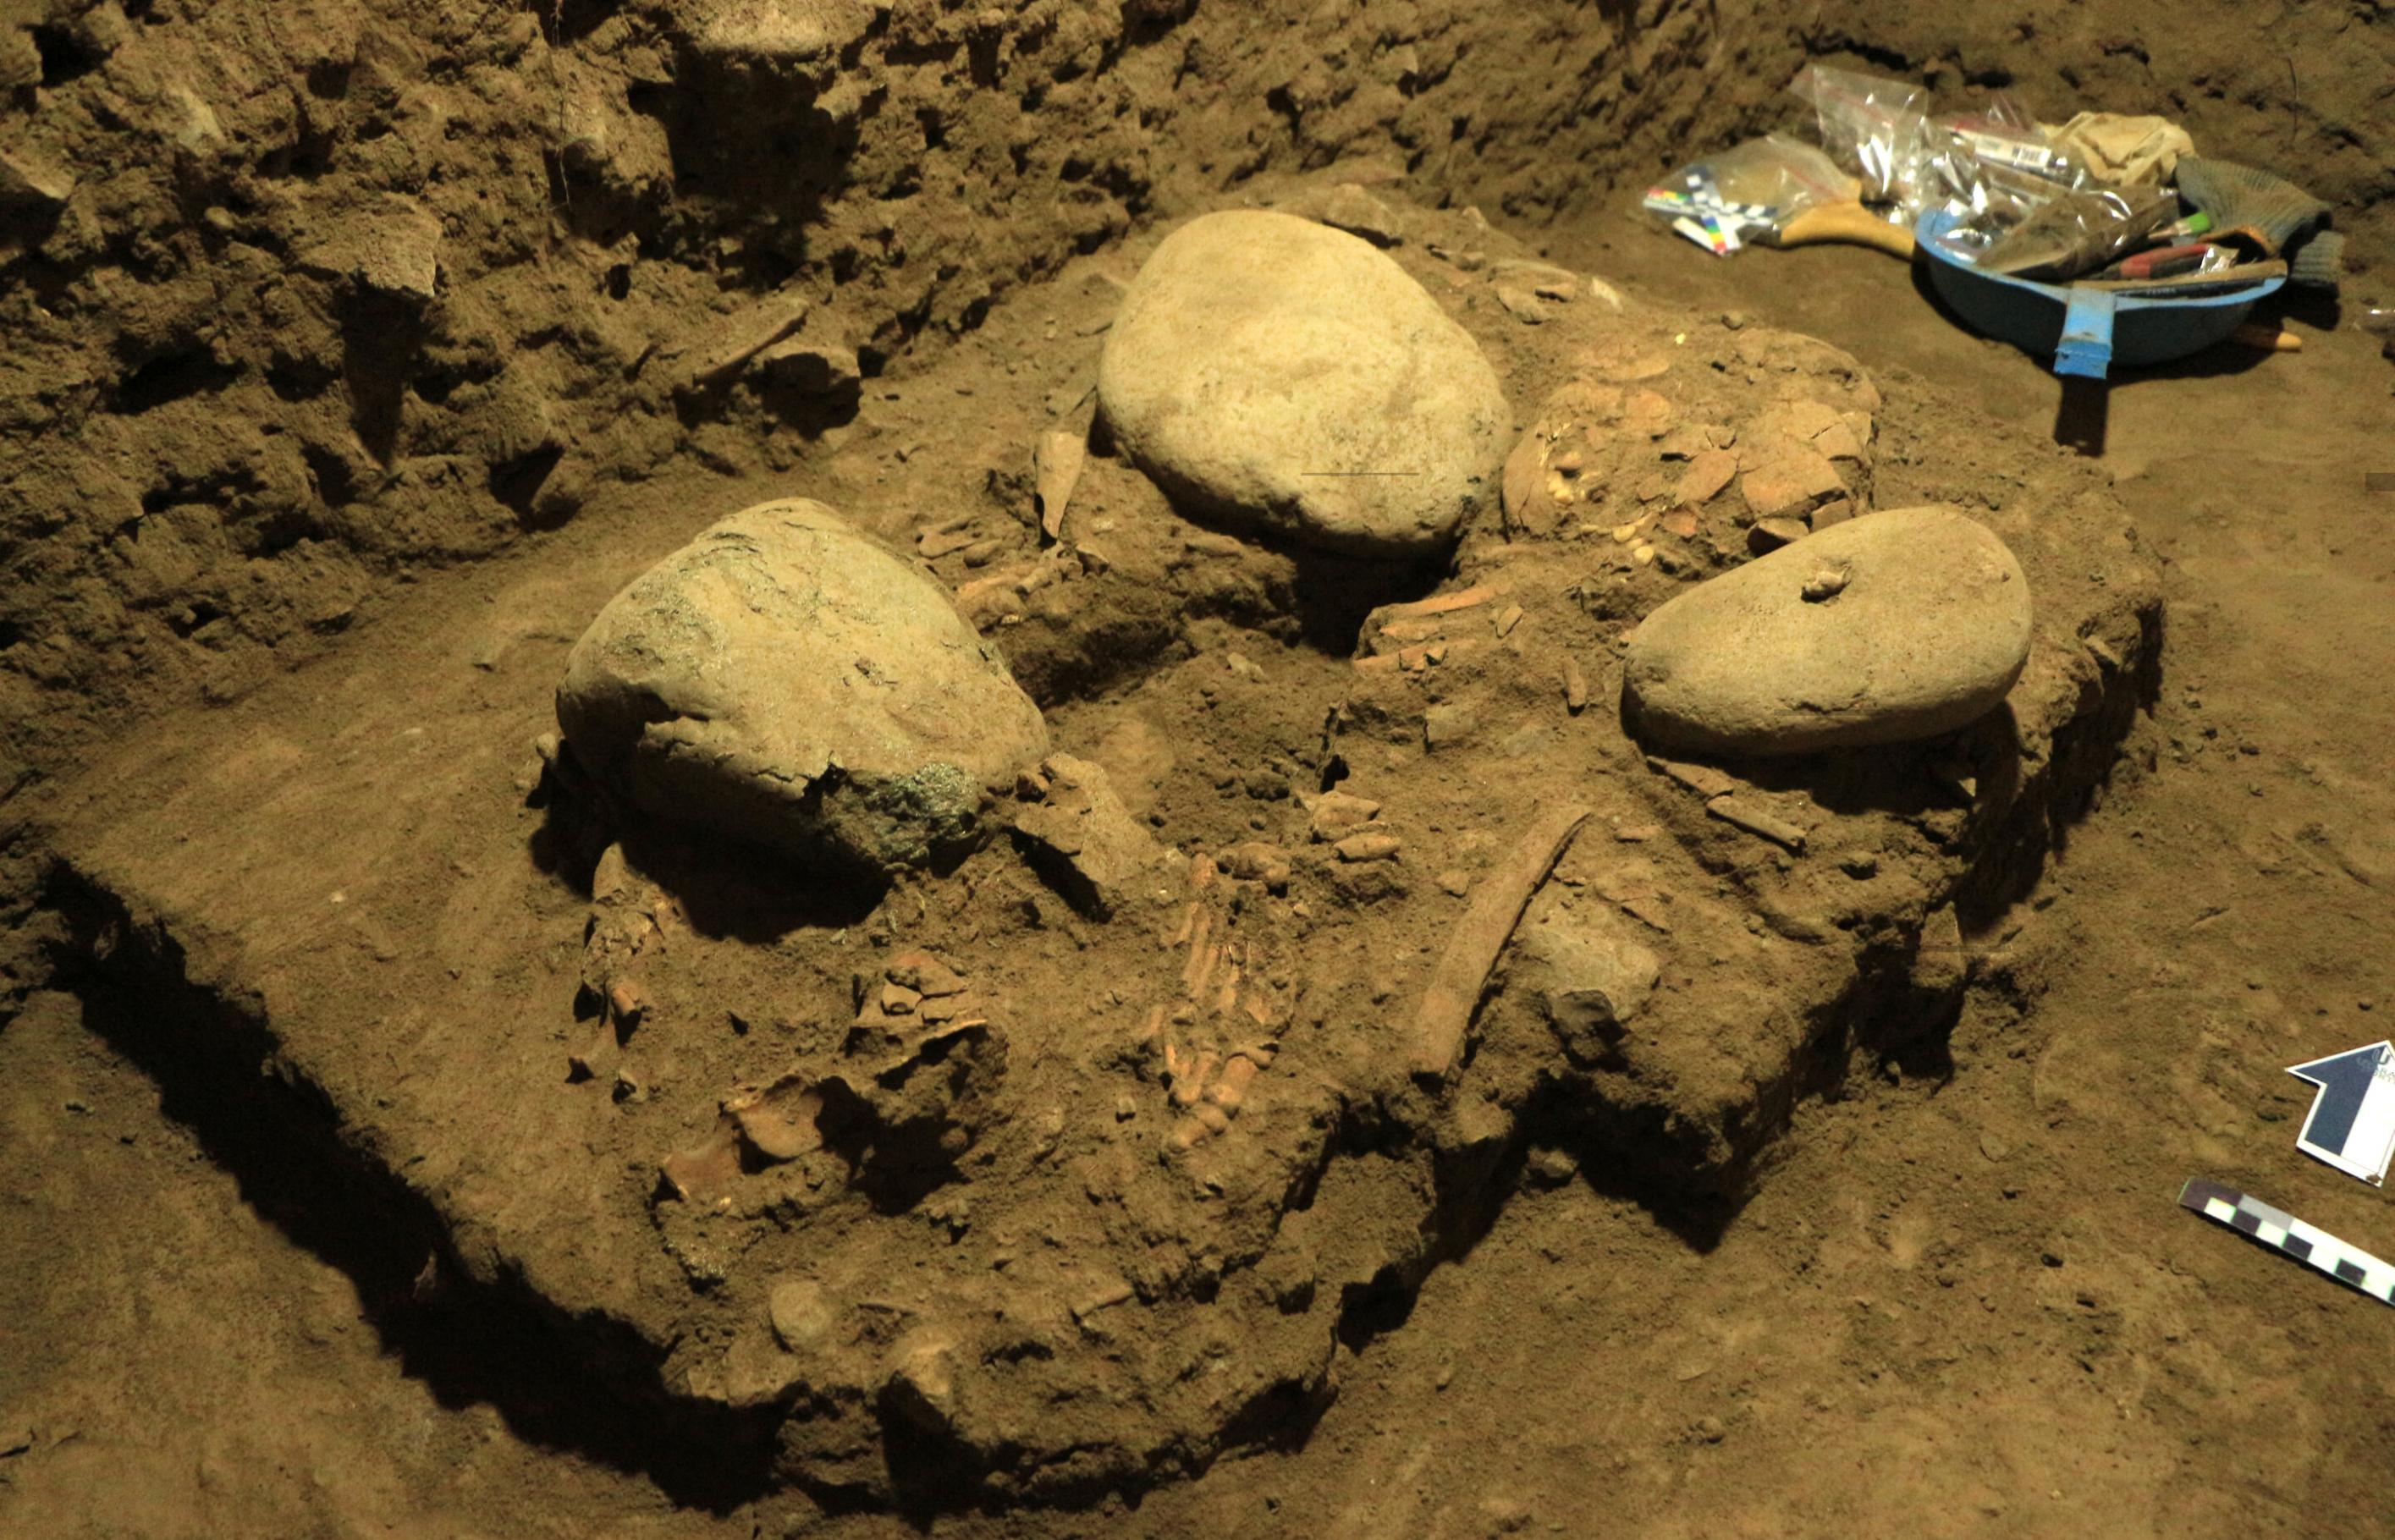 印度尼西亚苏拉威西岛发现7200年前遗骸 新型古人类“图阿莱人”有丹尼索瓦人基因